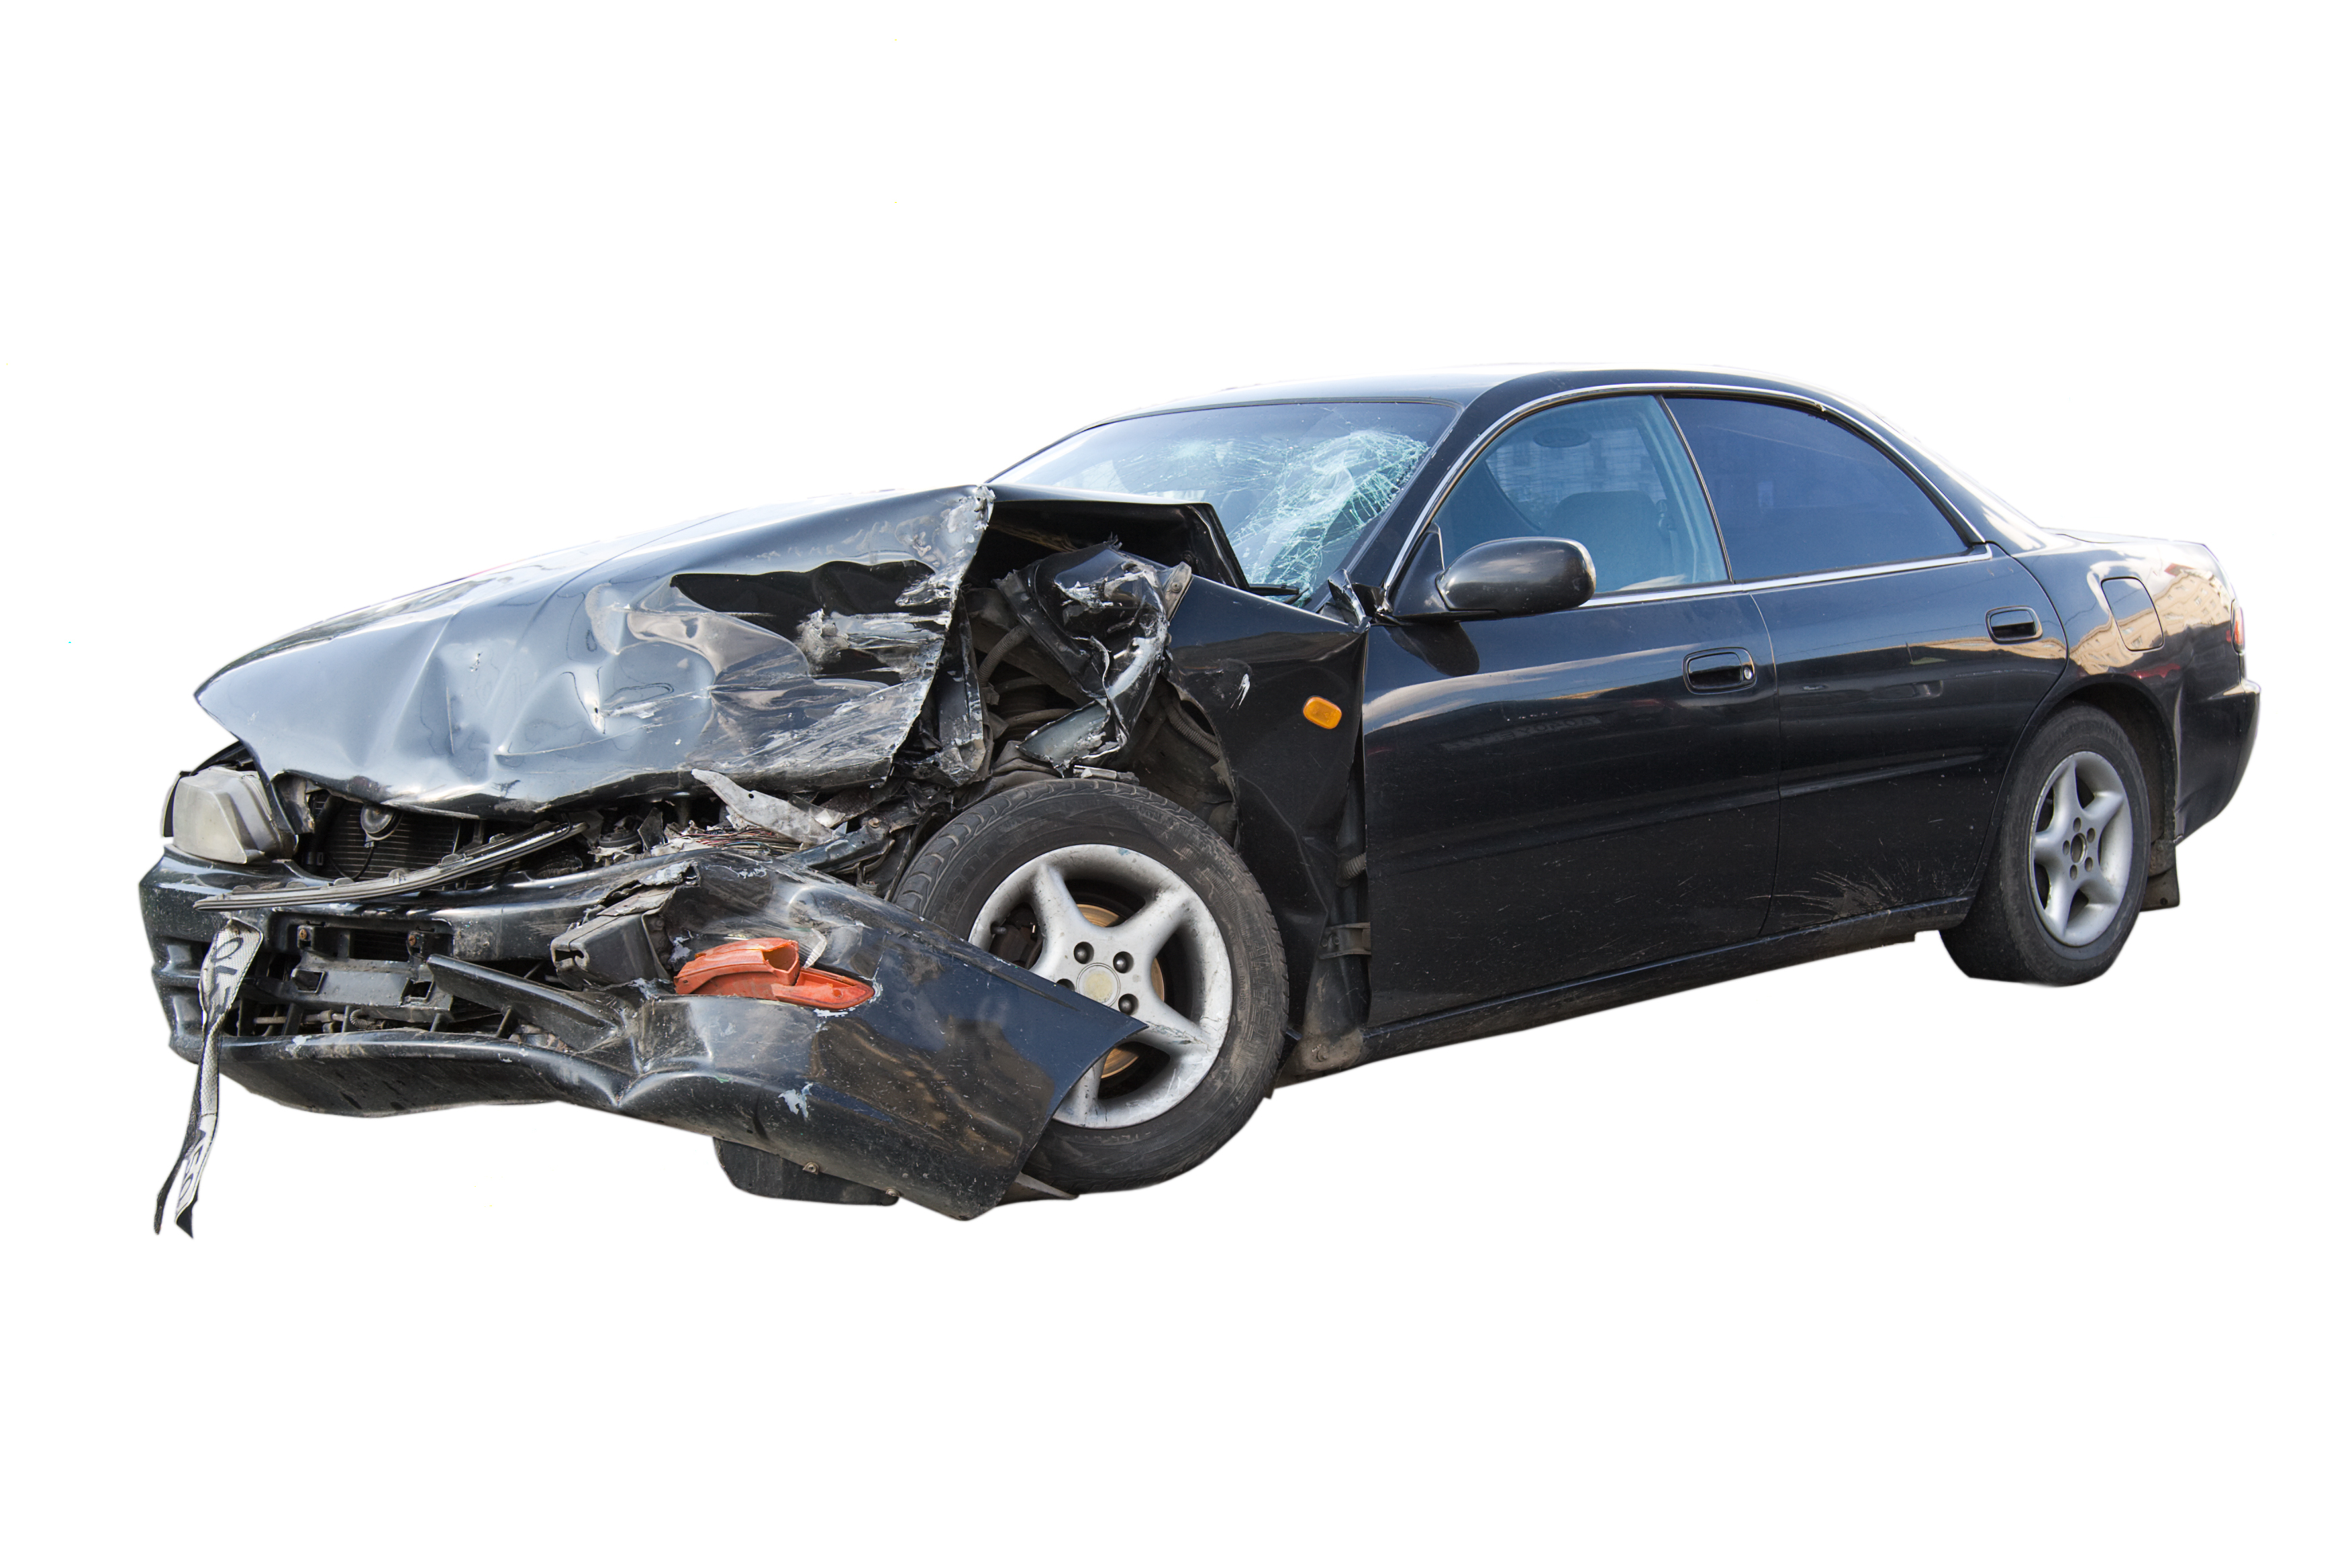 Automóvil chocado | Foto: Shutterstock